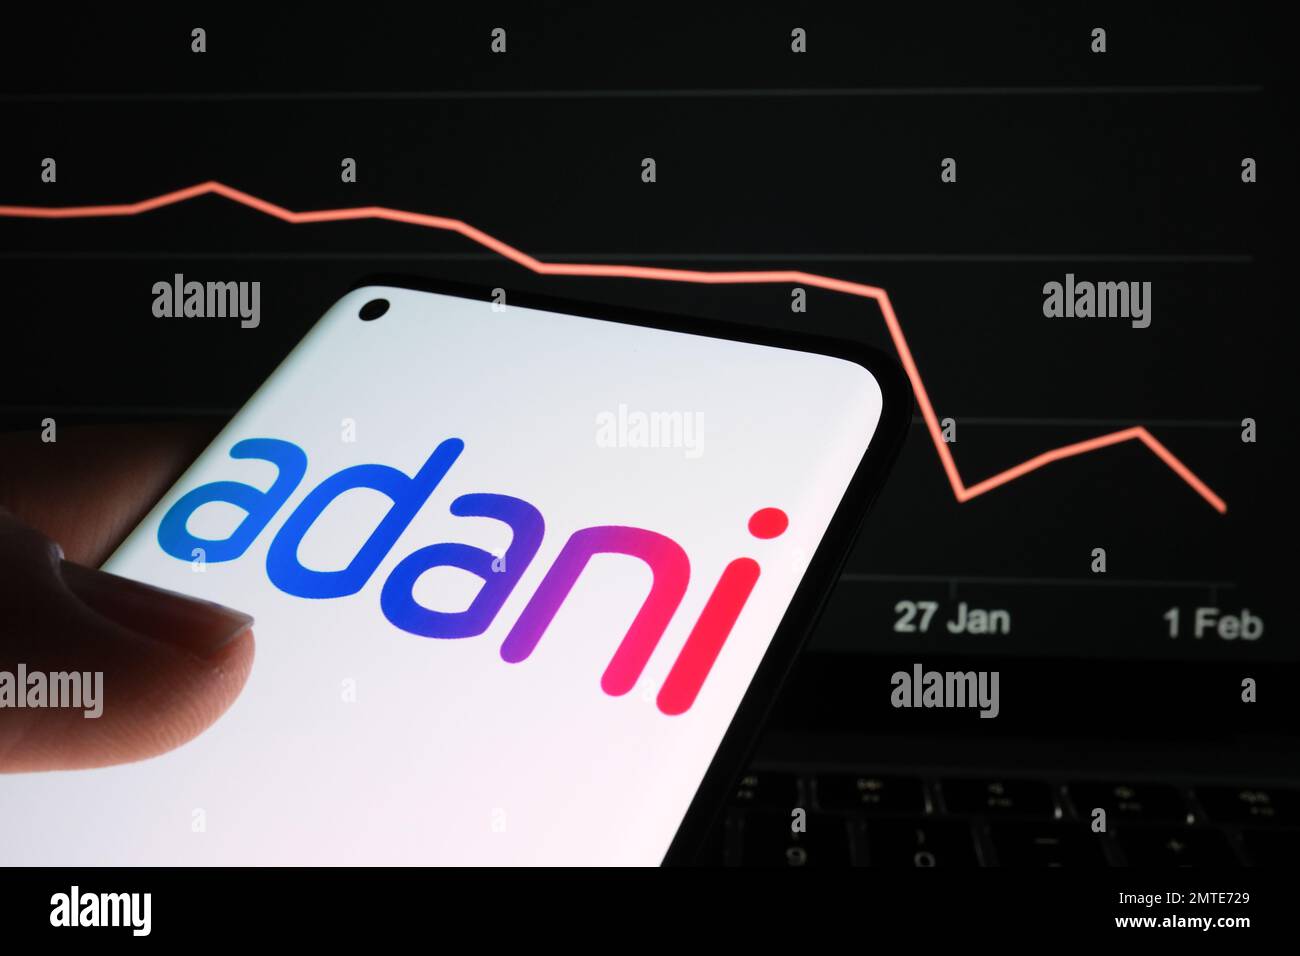 Logo del gruppo Adani visualizzato sullo schermo dello smartphone e grafico del calo dei prezzi delle azioni dell'azienda visualizzato sullo sfondo sfocato. Grafico delle scorte reali per un mese Foto Stock